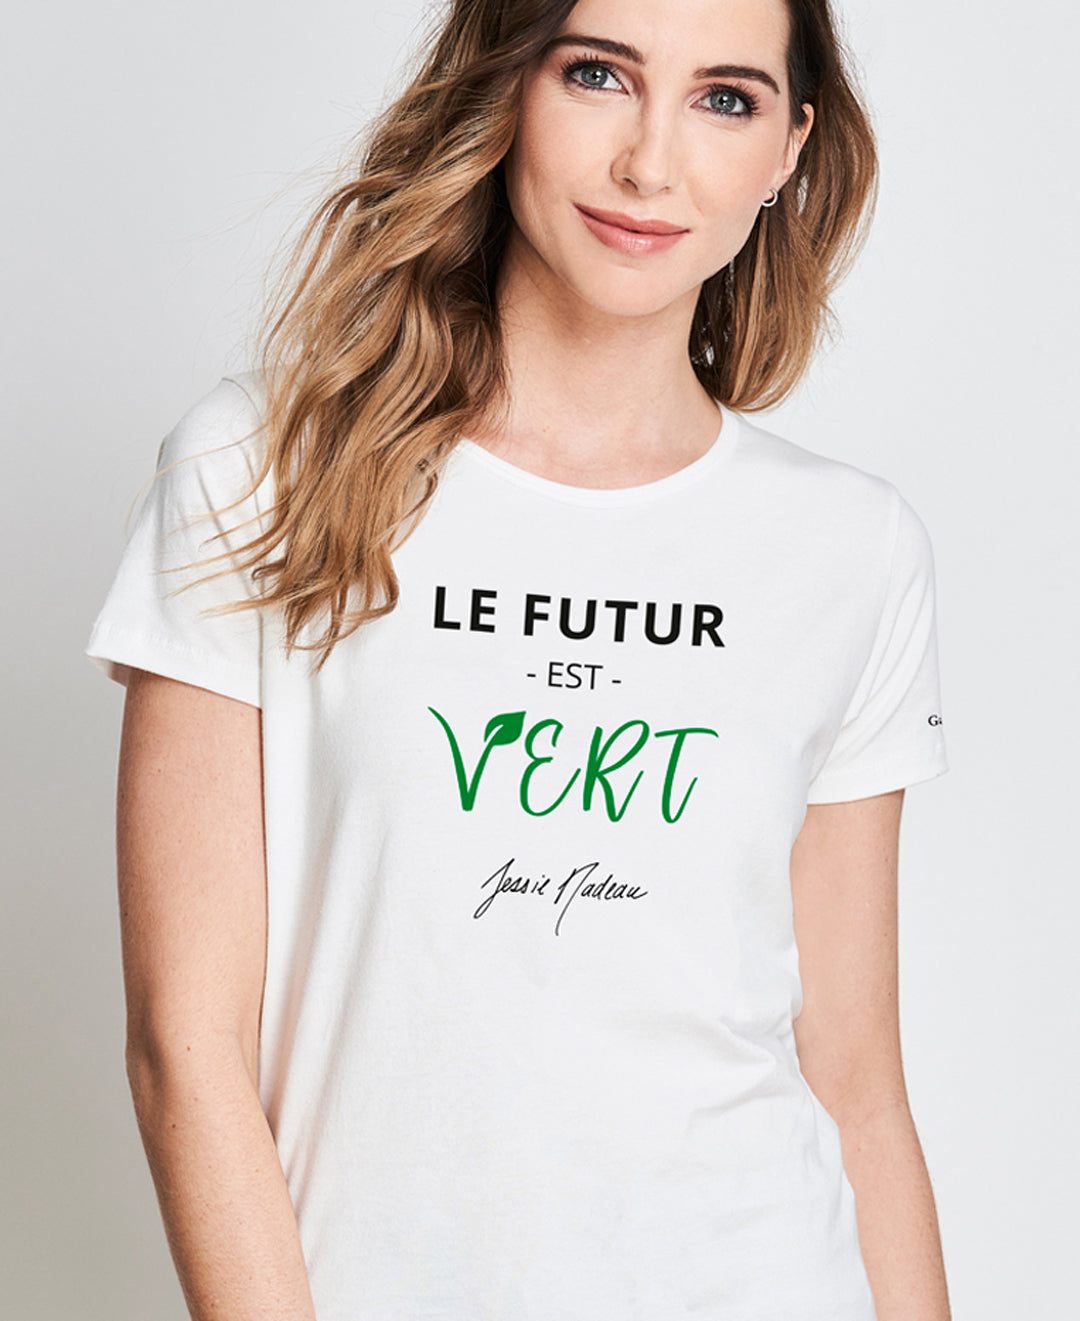 T-shirt fait au Québec en collabo avec Jessie Nadeau blanc